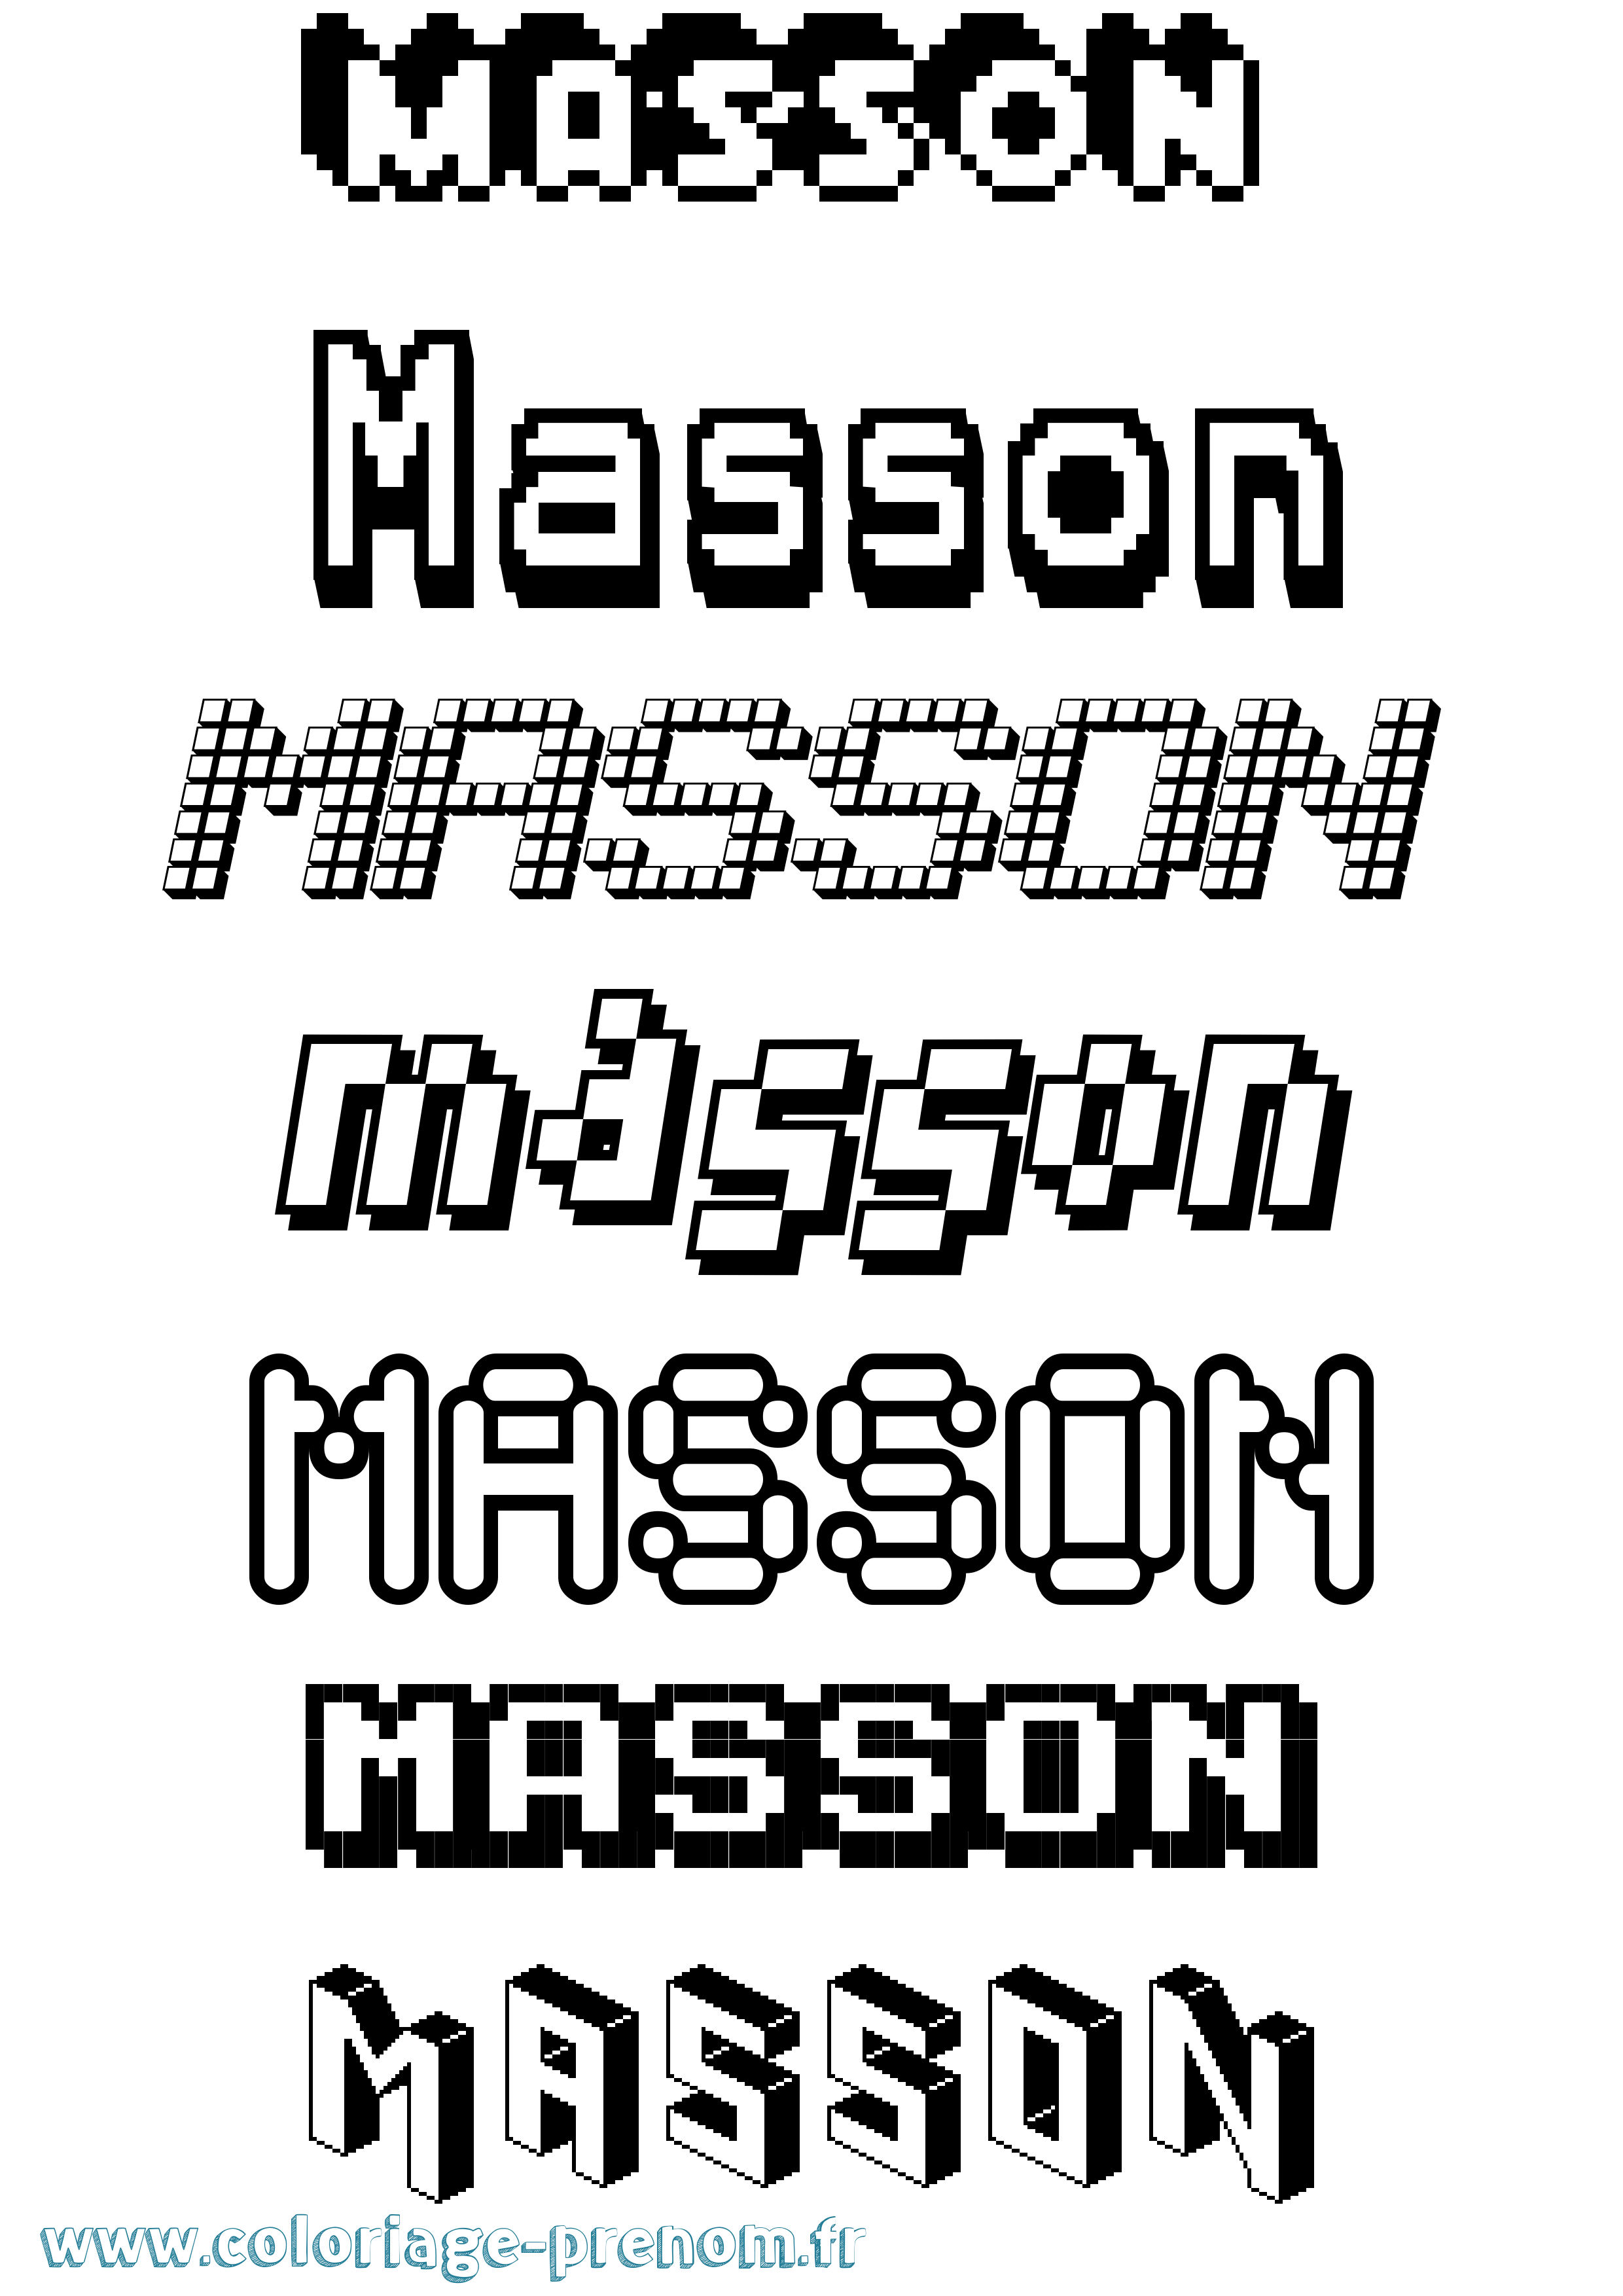 Coloriage prénom Masson Pixel